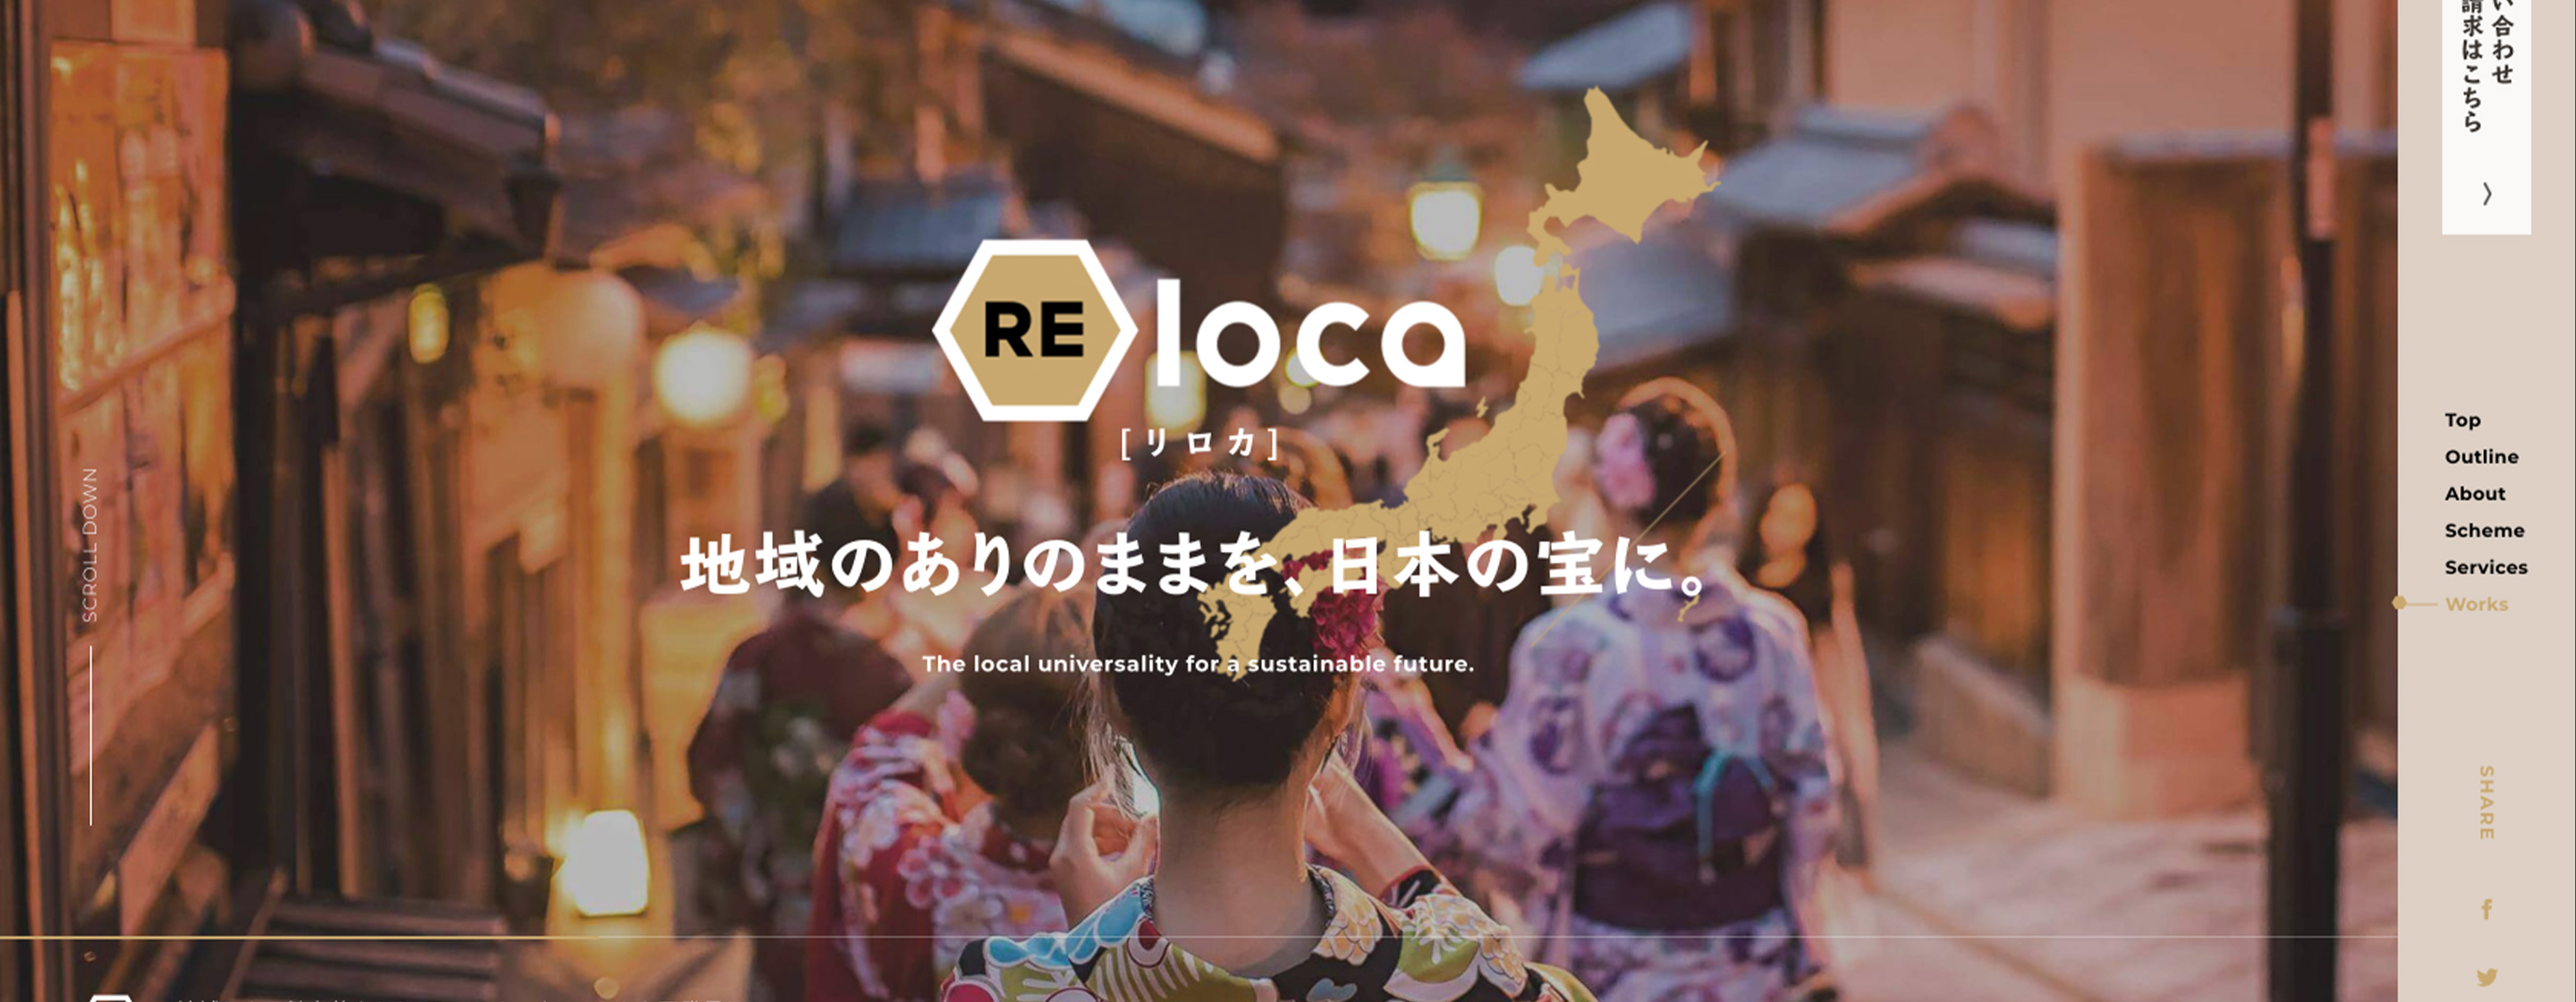 株式会社バンブック / RELOCA Webサイト